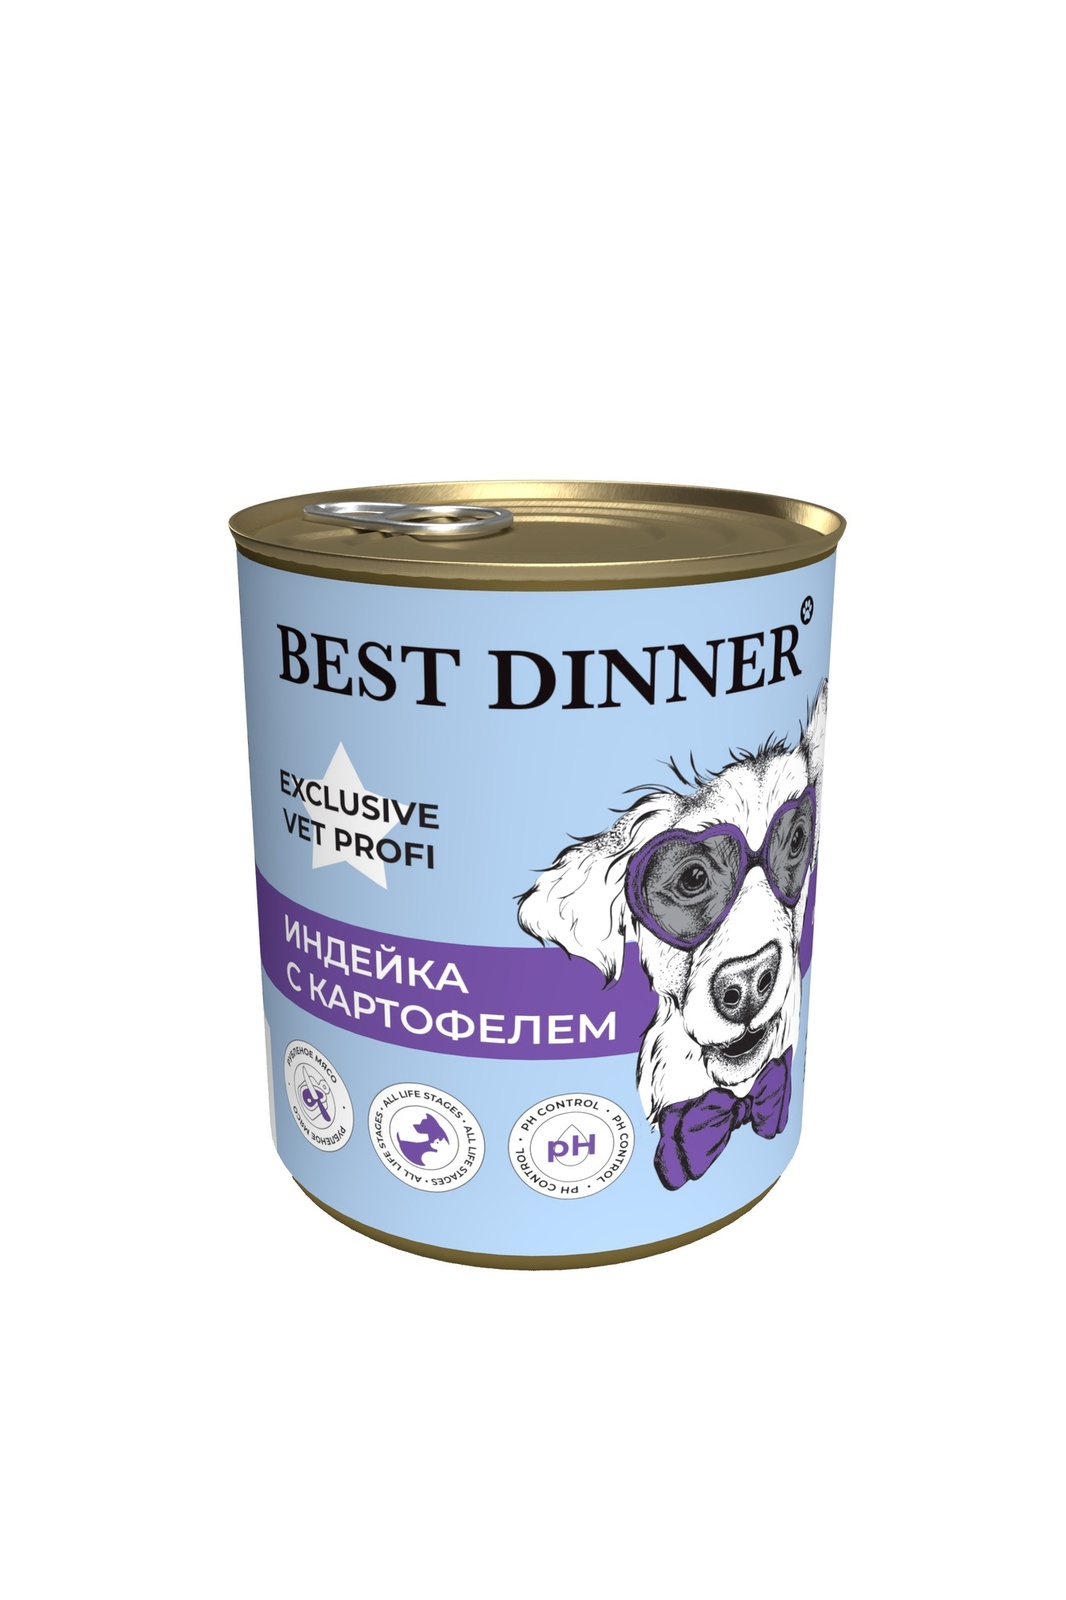 Best Dinner Best Dinner консервы для собак Exclusive Urinary Индейка с картофелем (340 г) best dinner best dinner гипоаллергенные консервы с кониной и рисом для собак всех пород 340 г